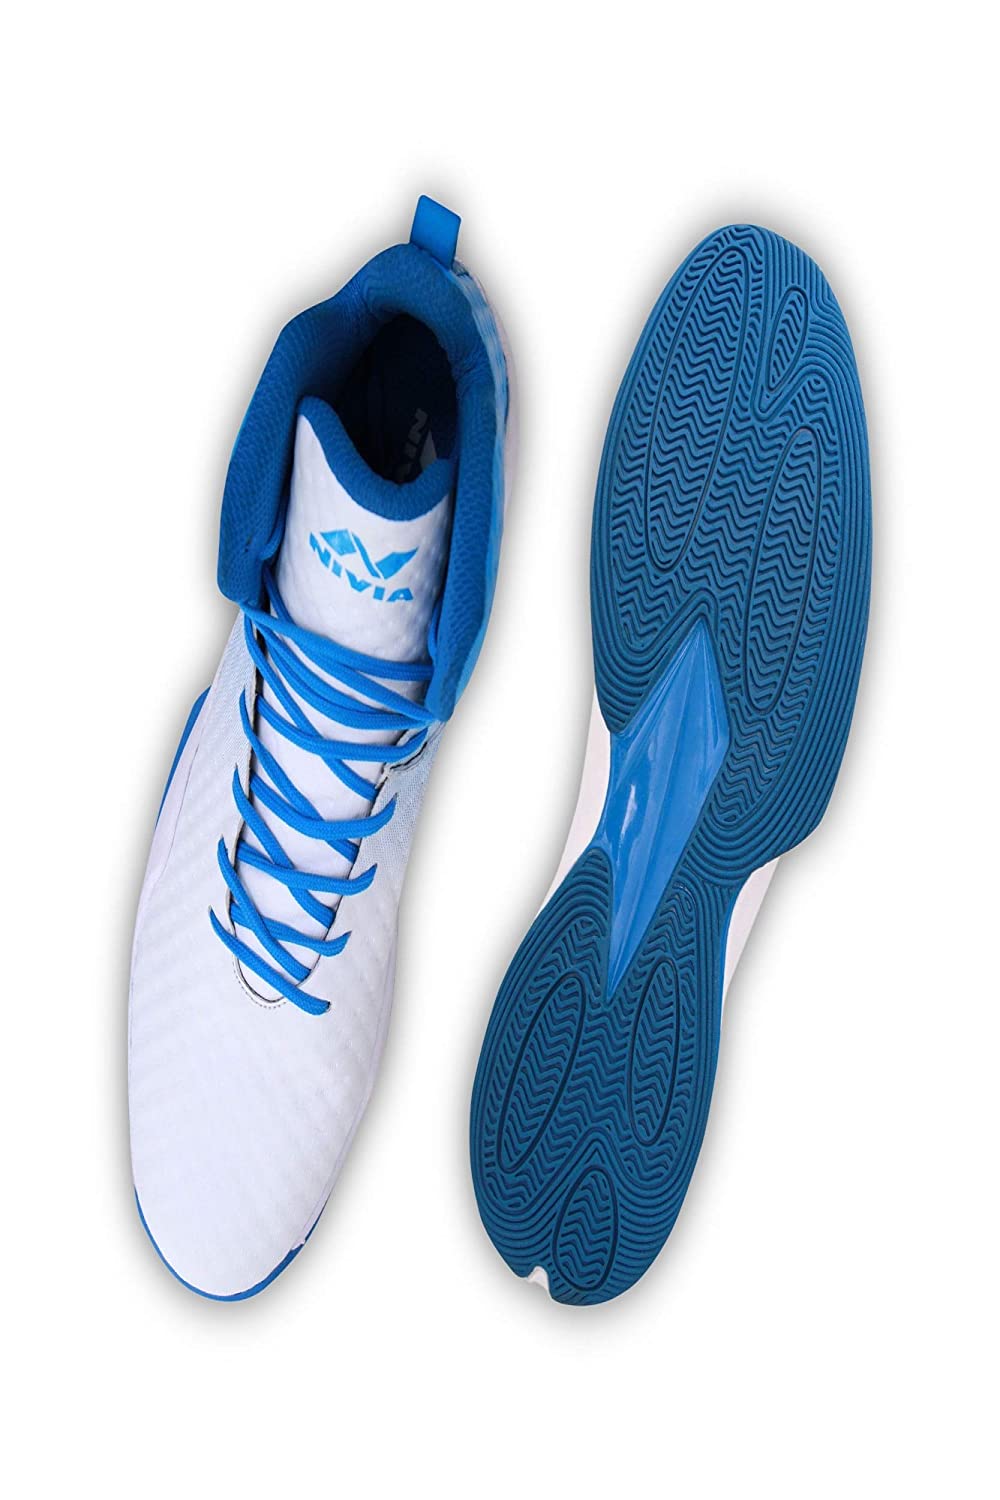 Nivia 1173WS Engraver Basketball Shoe for Mens - Best Price online Prokicksports.com